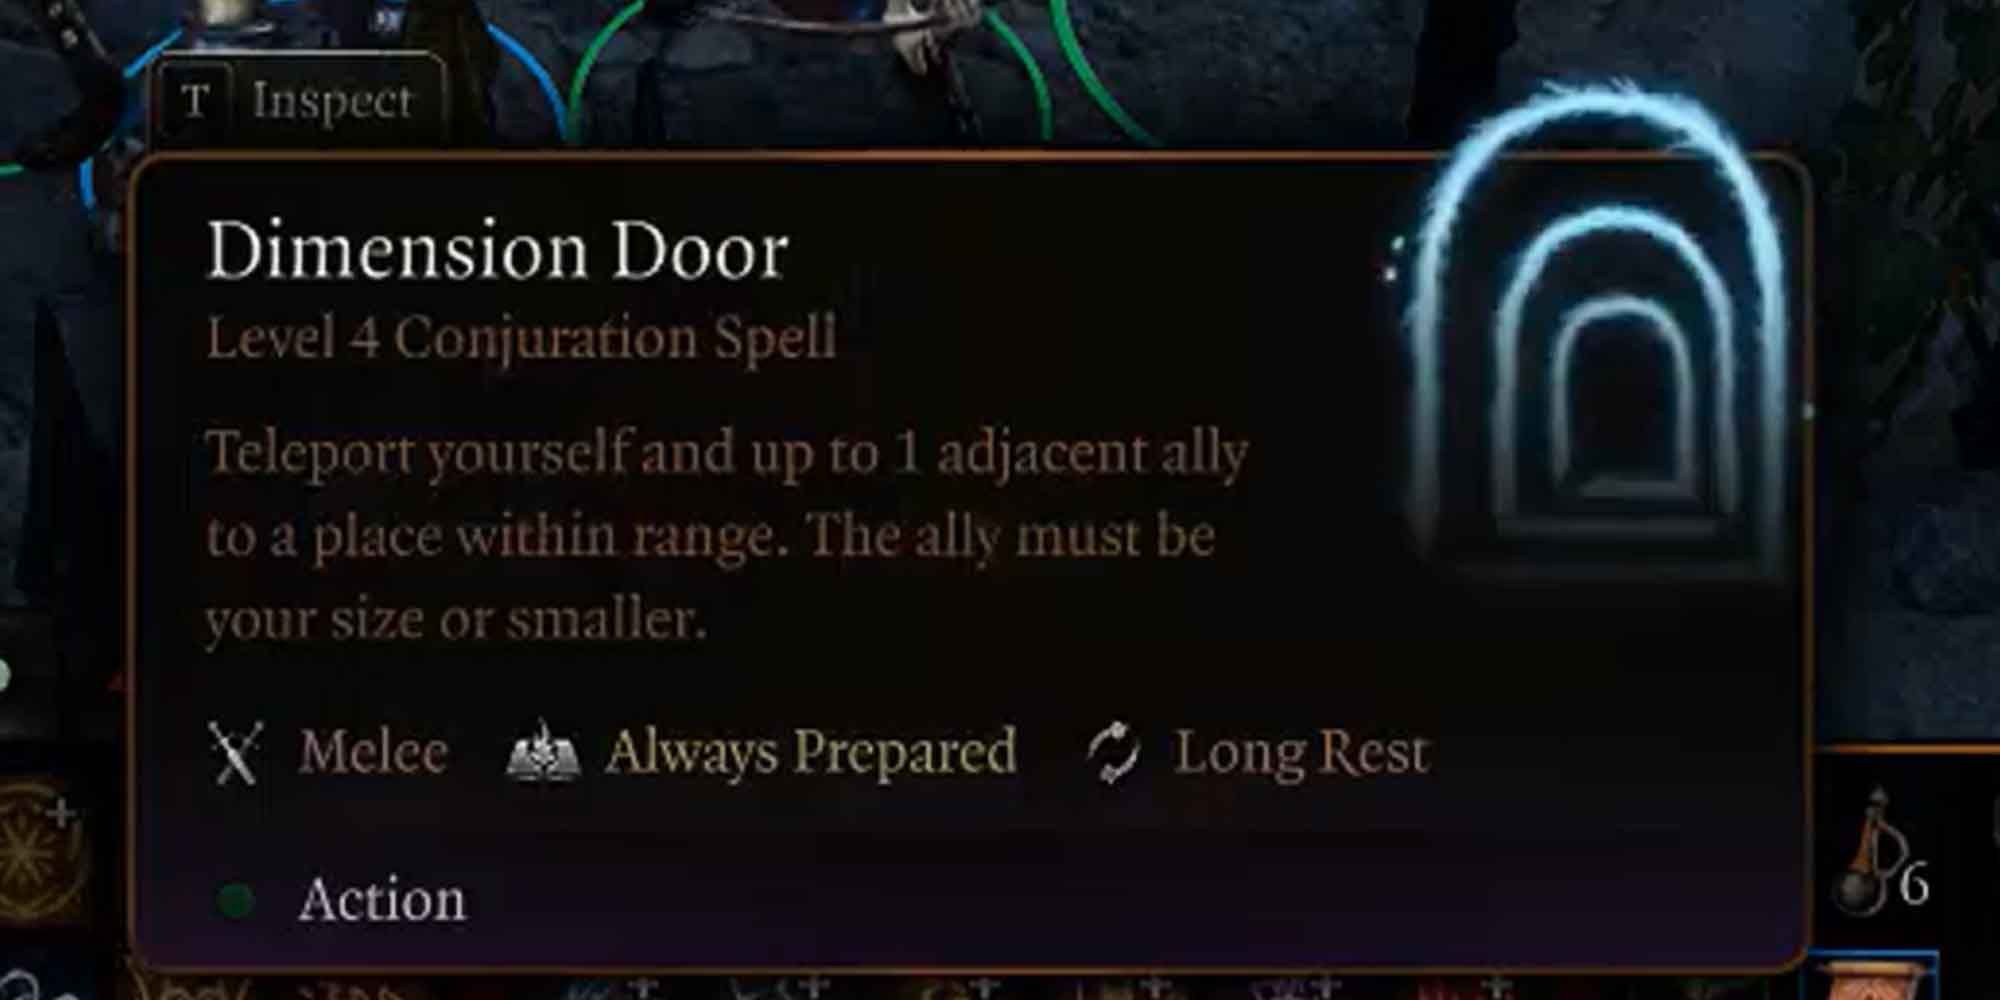 The Dimension Door spell in Baldur's Gate 3